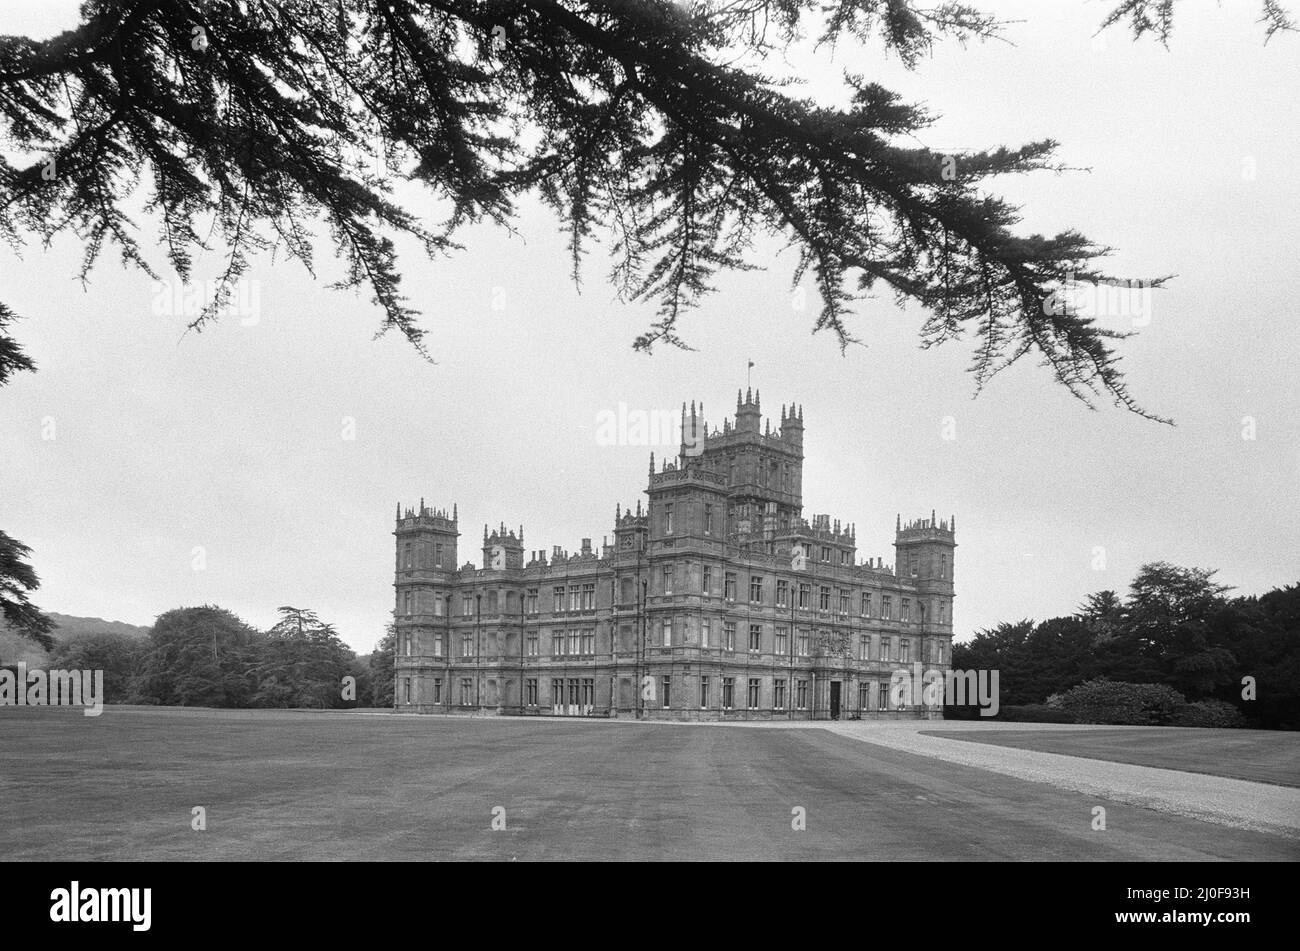 Le château de Highclere est le siège du comte de Carnarvon. Highclere, Hampshire. Vers septembre 1979. Banque D'Images